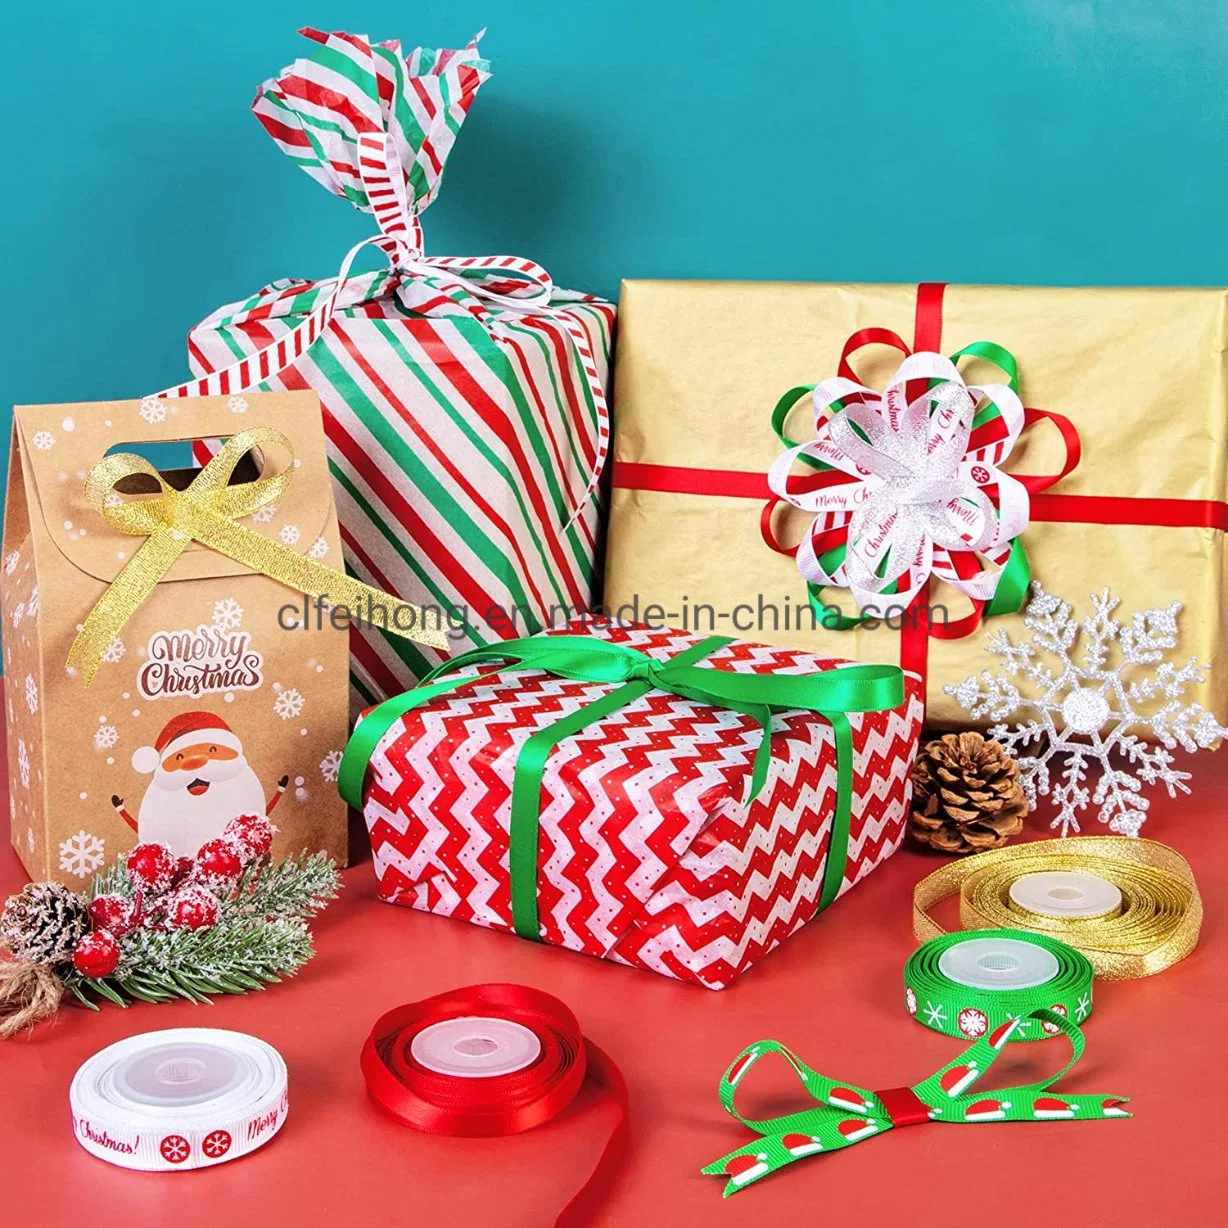 المصنع السعر بالجملة الشريط اللامع طباعة فوركسمس [كريكتّرسّ] عيد ميلاد المسيح زخرفة هدية صندوق تغليف يلفّ لون أحمر اللون الأخضر